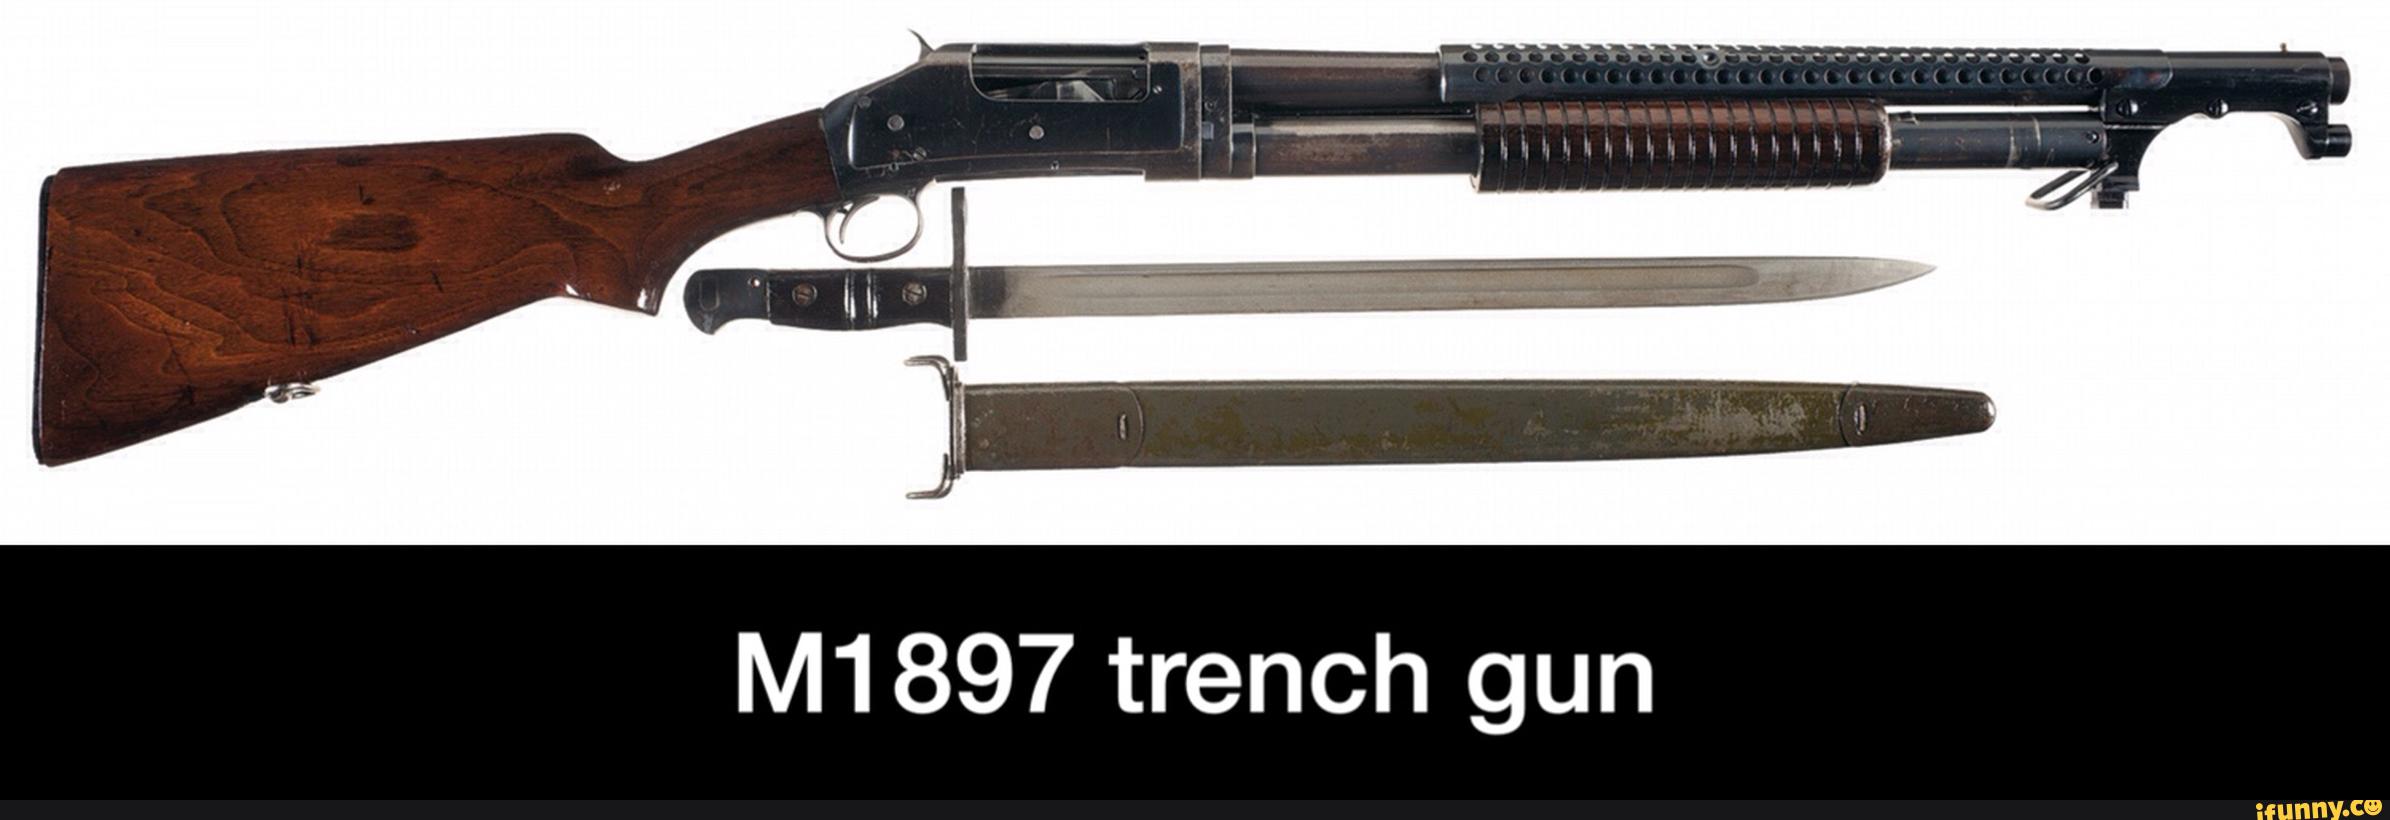 M1897 trench gun - M1897 trench gun.